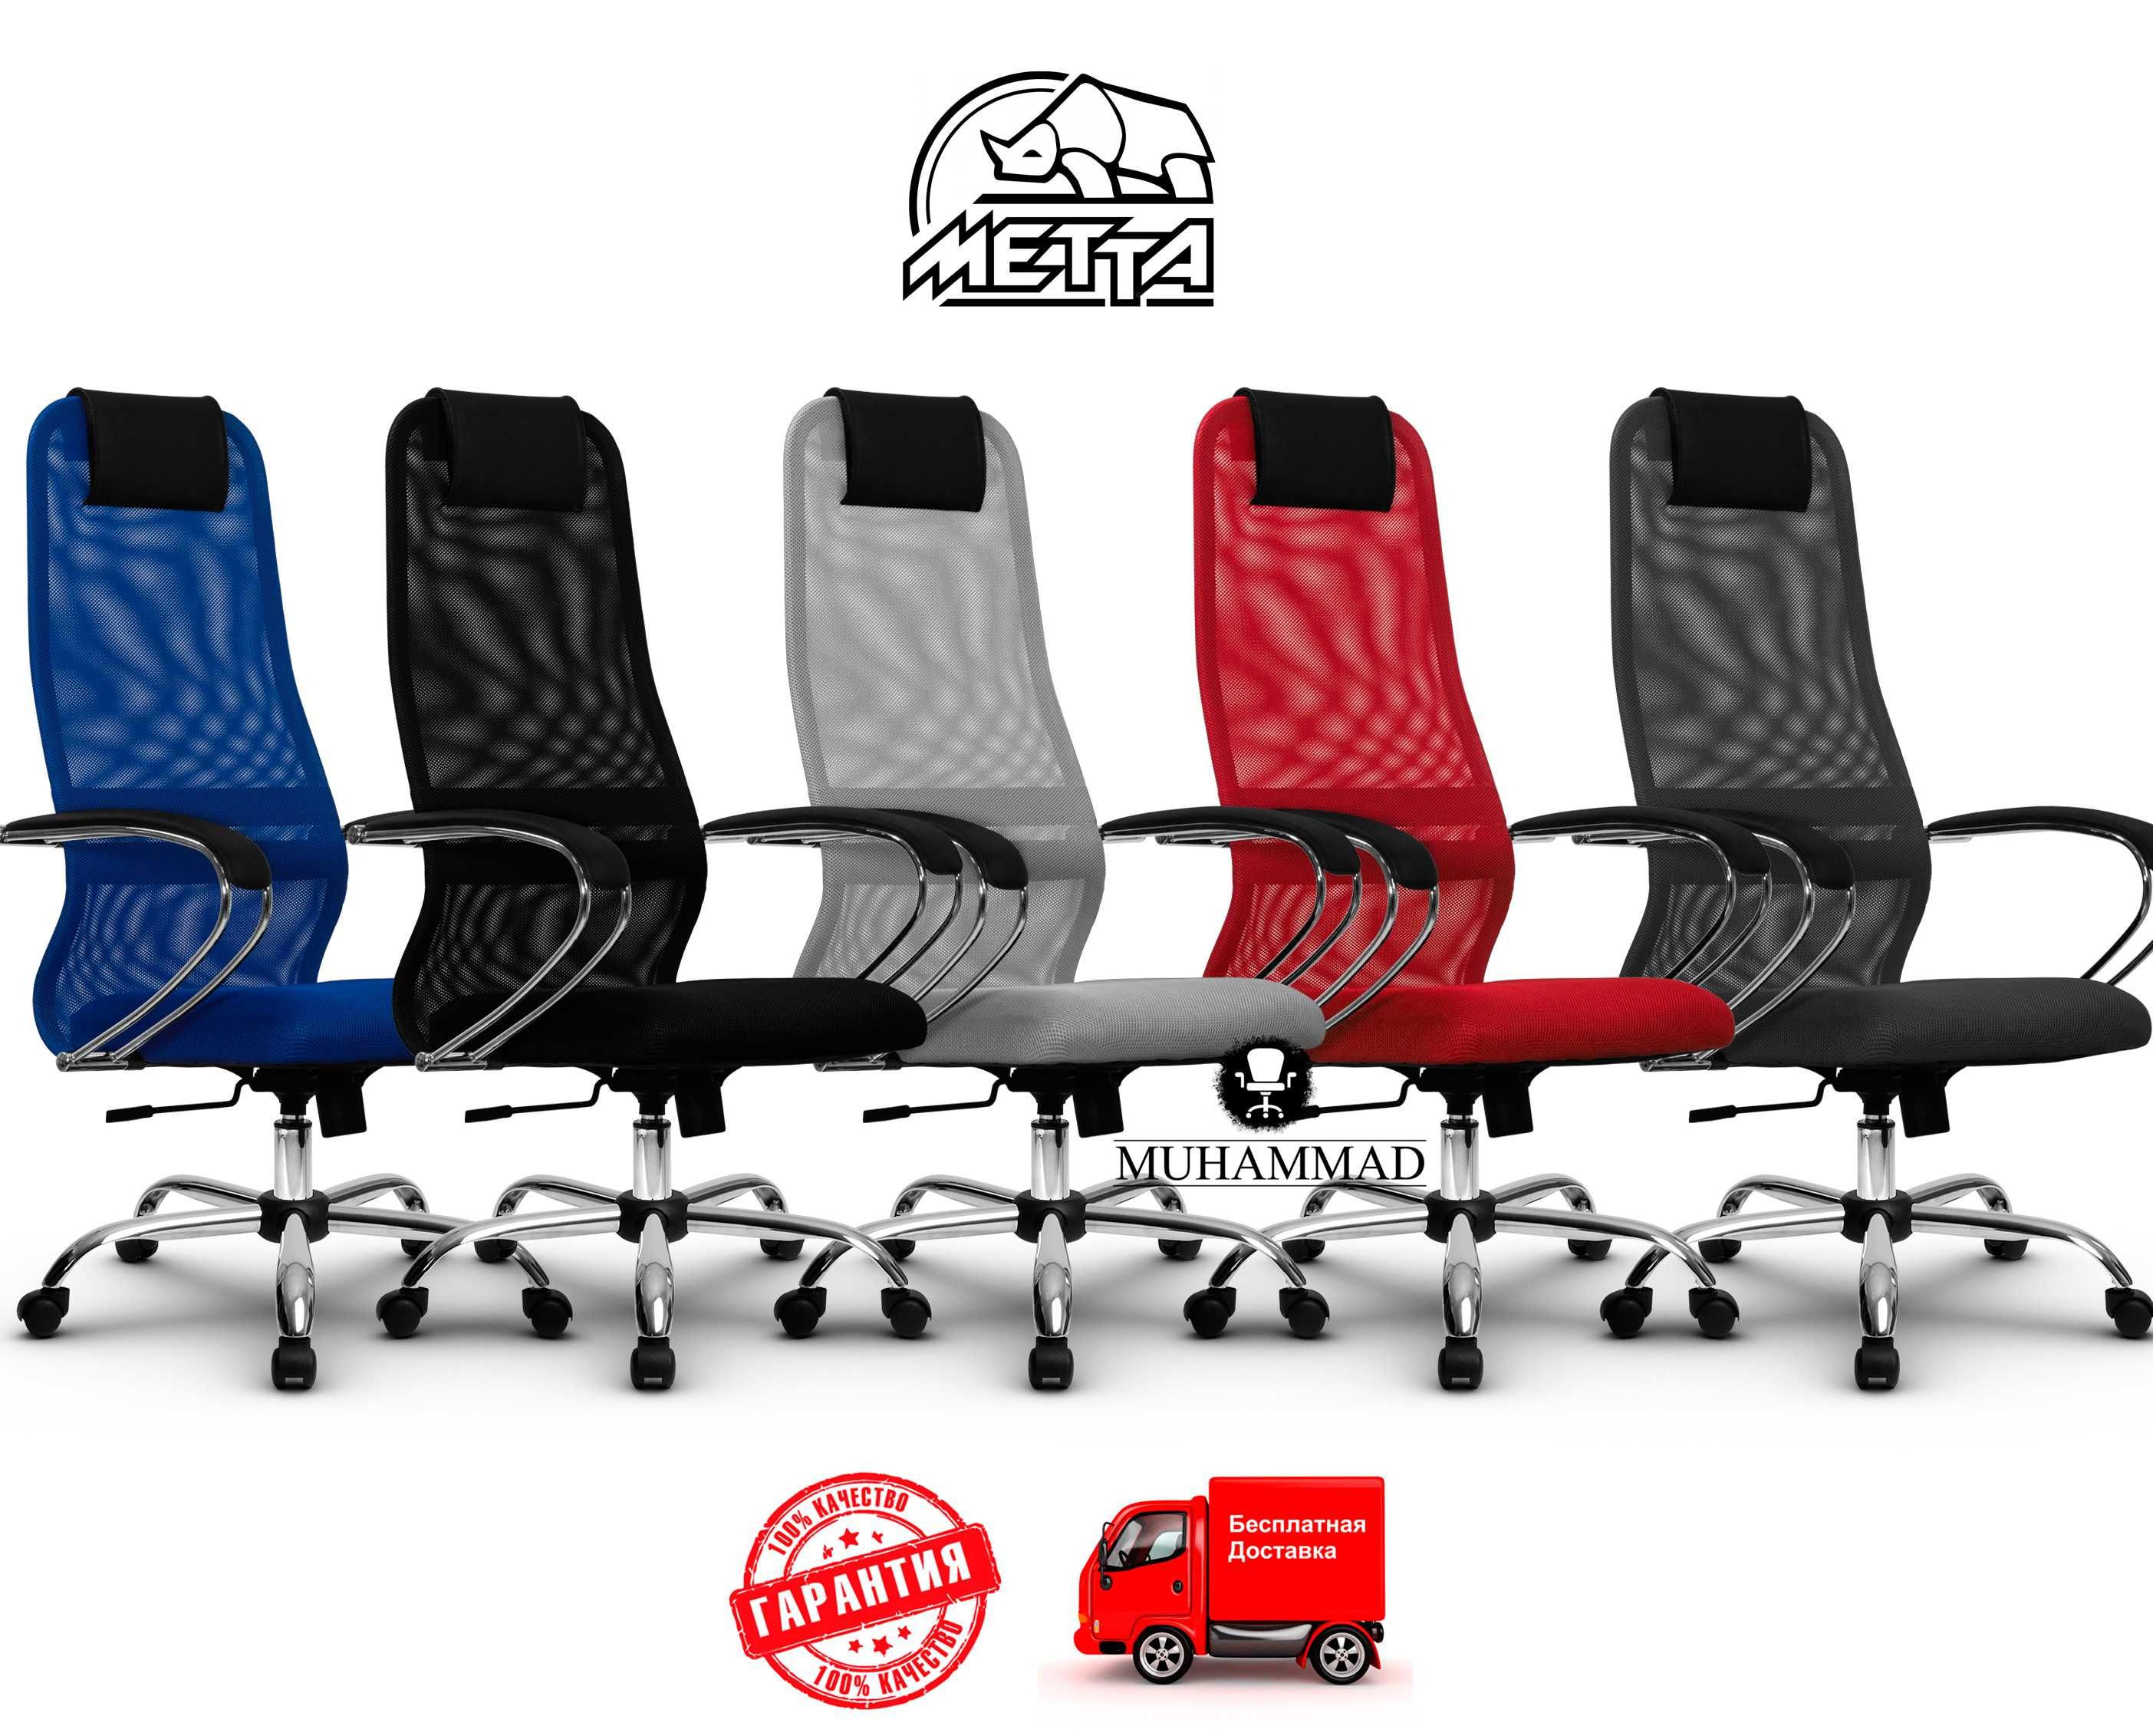 Кресло для персонала METTA SU-BK-8 (цвета разные) доставка бесплатная